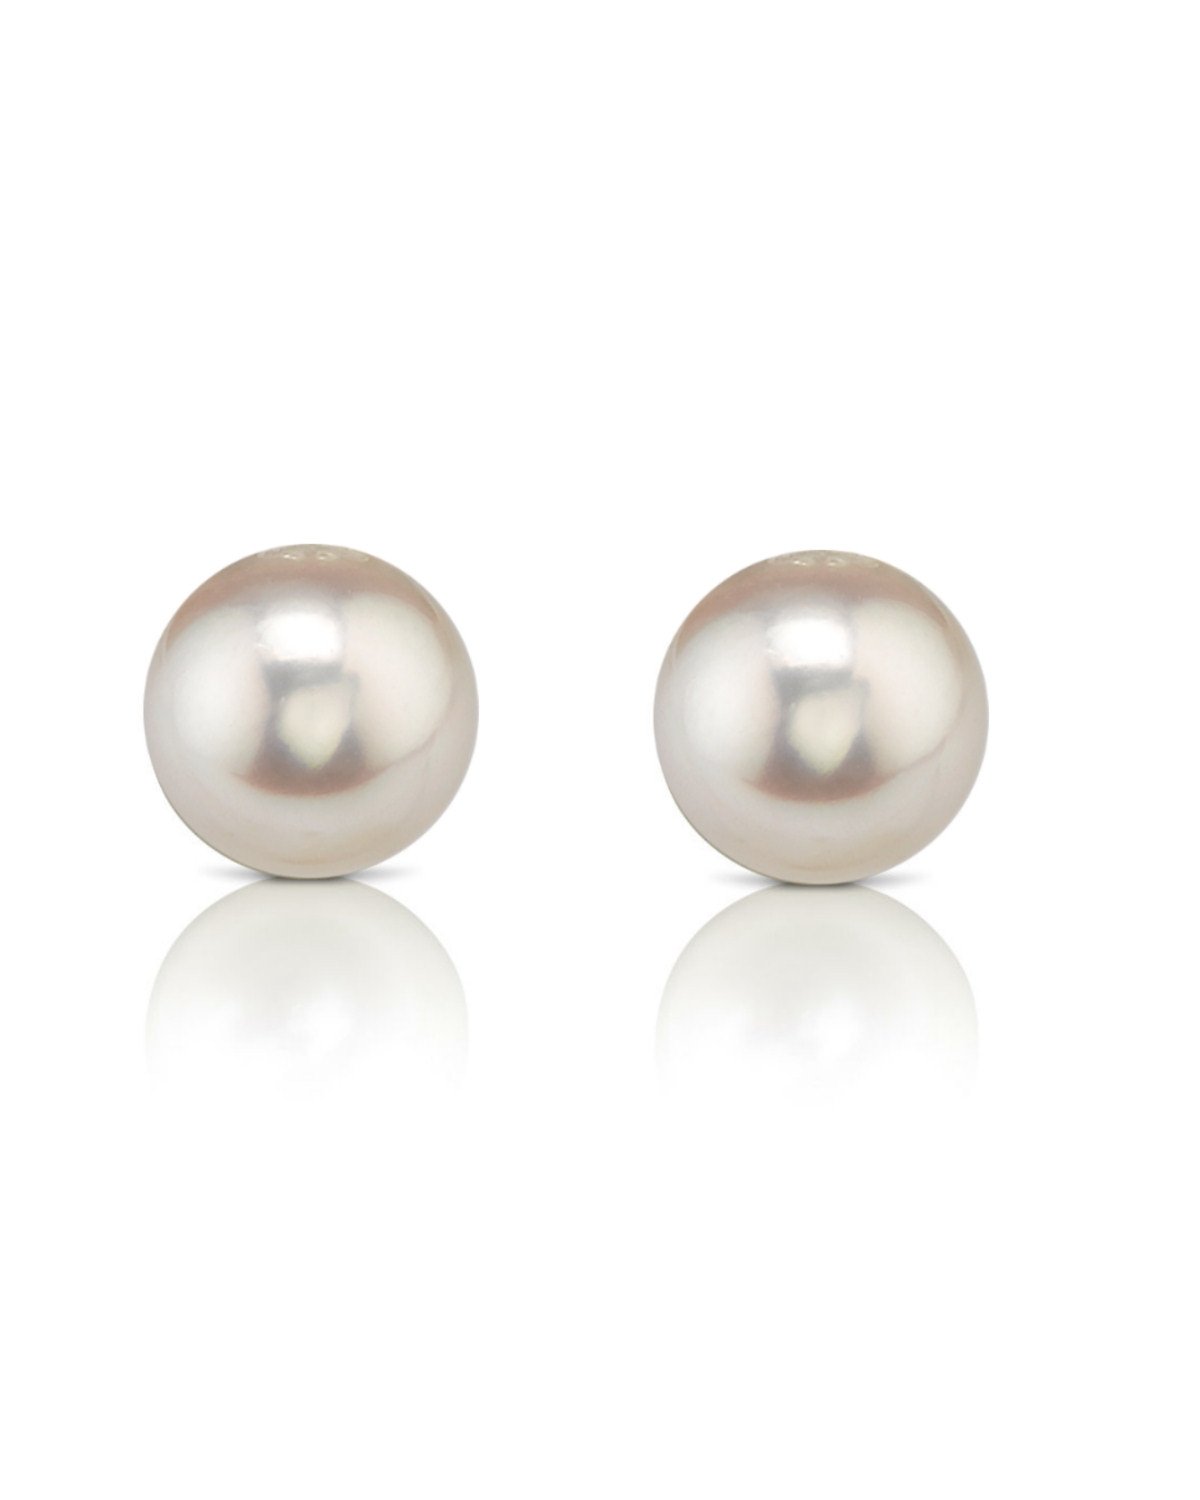 Mikimoto vs Tiffany? Who Has the Better Pearls? - Pearls of Joy